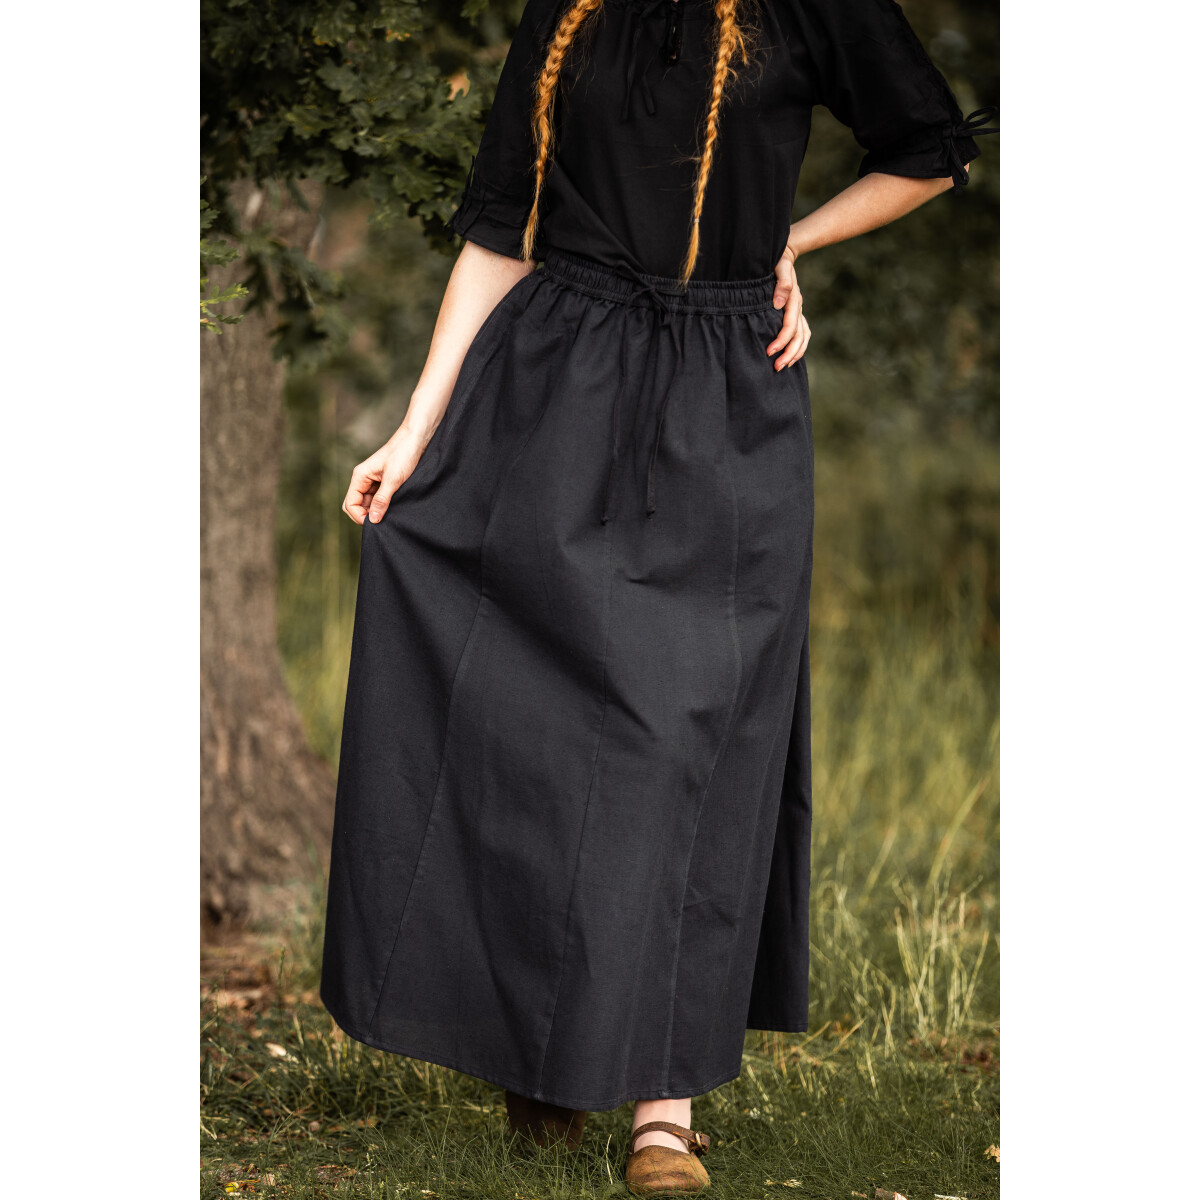 Medieval skirt Dana Black